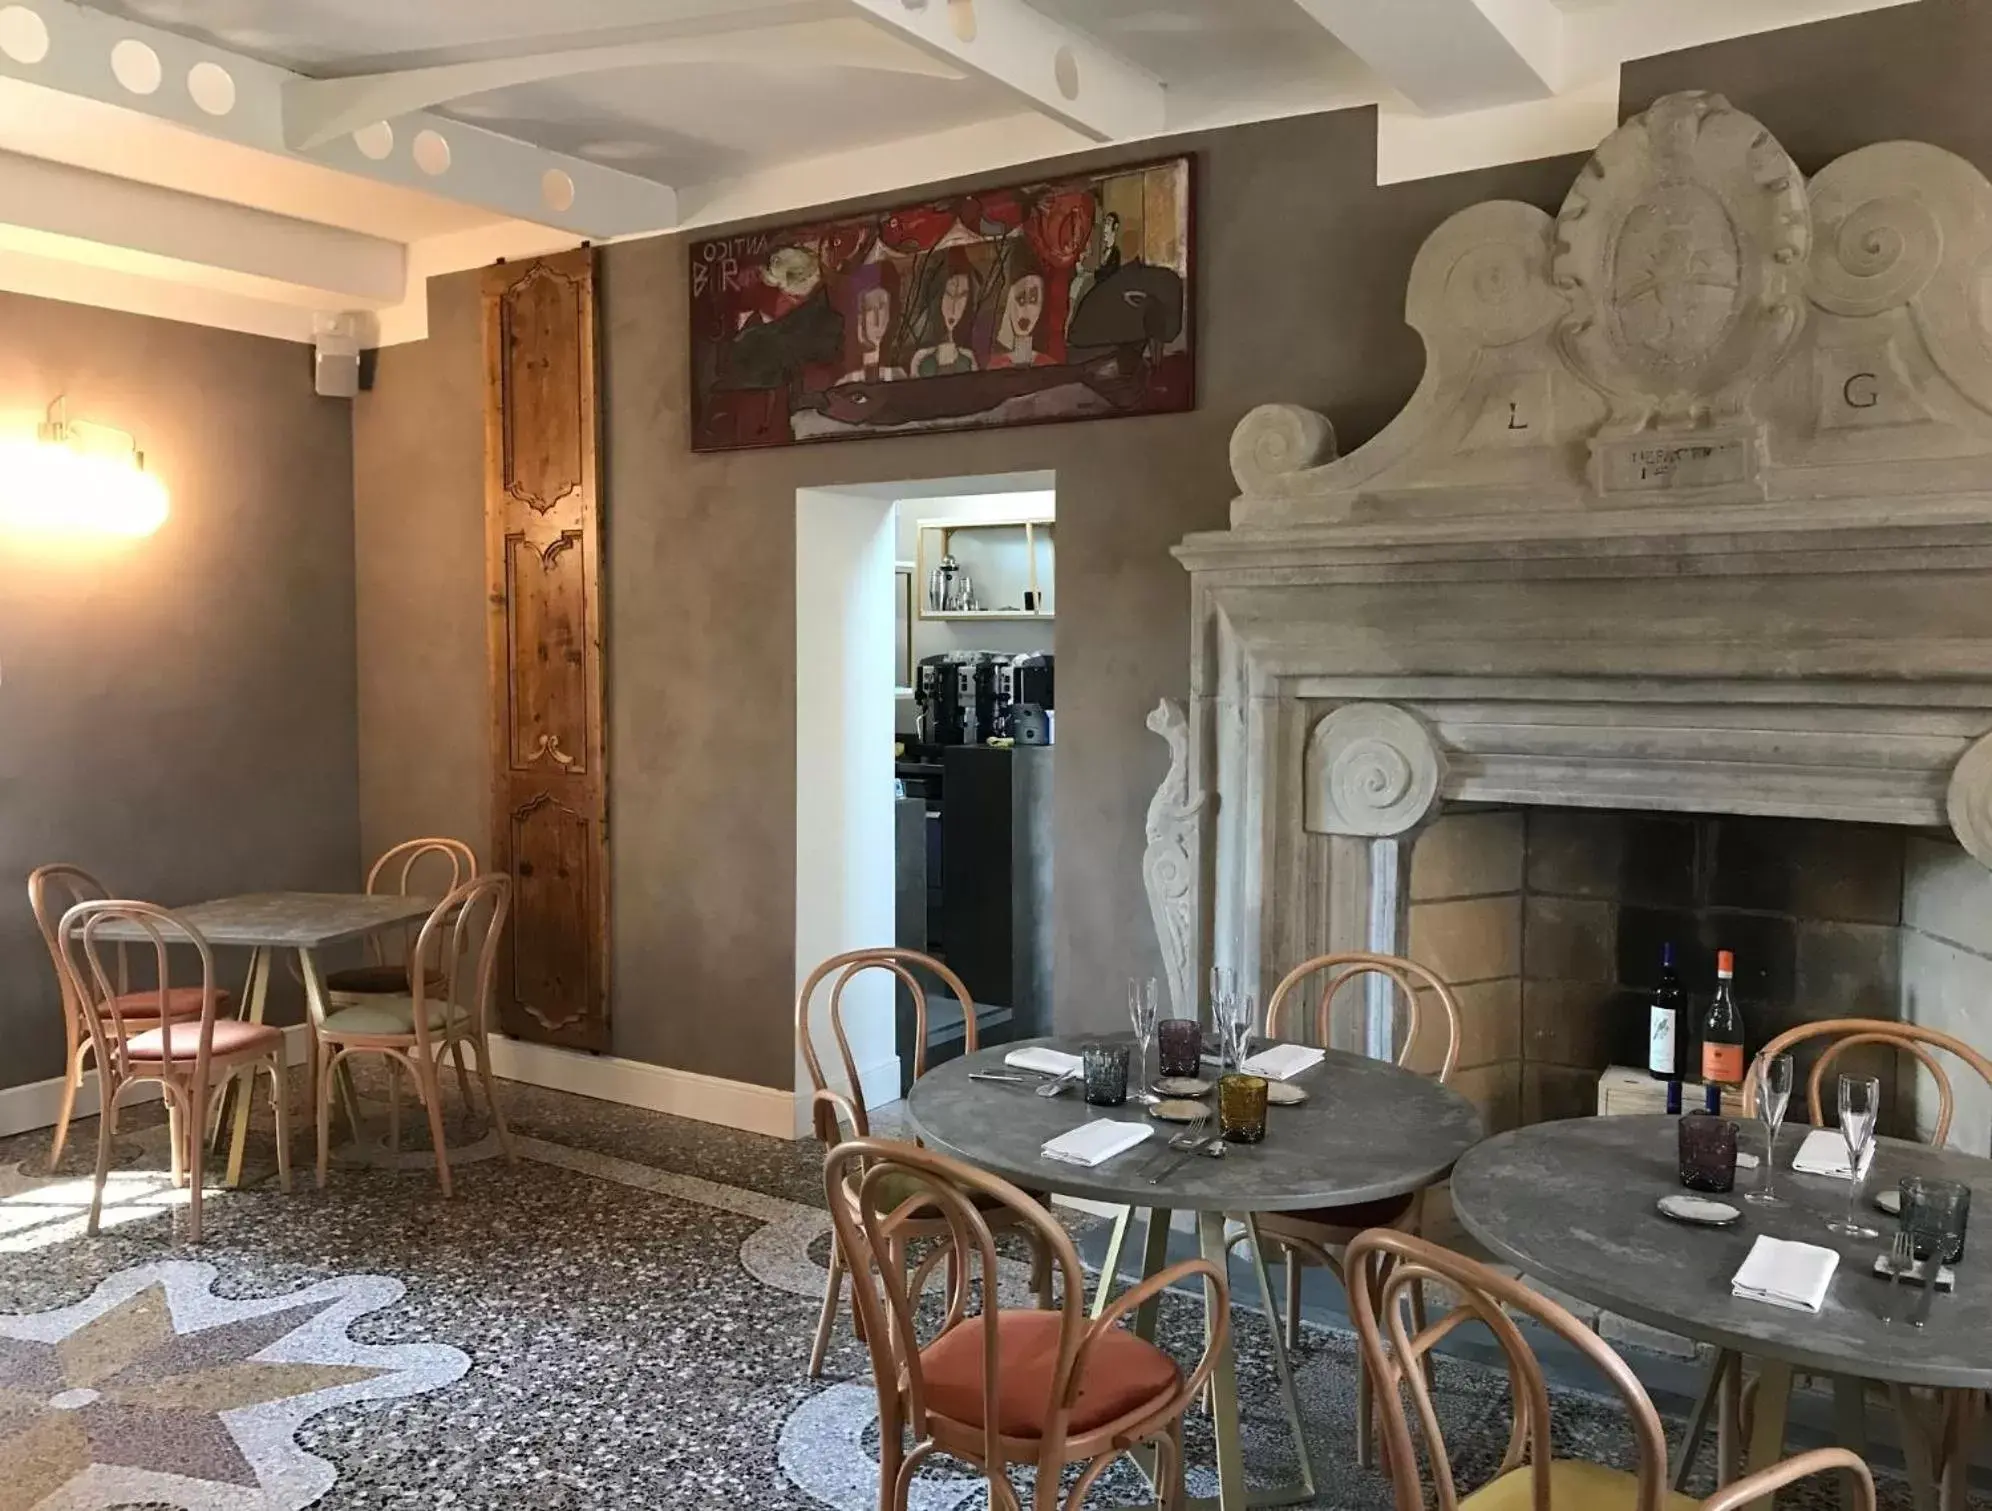 Restaurant/places to eat, Dining Area in Capriccio Art Hotel